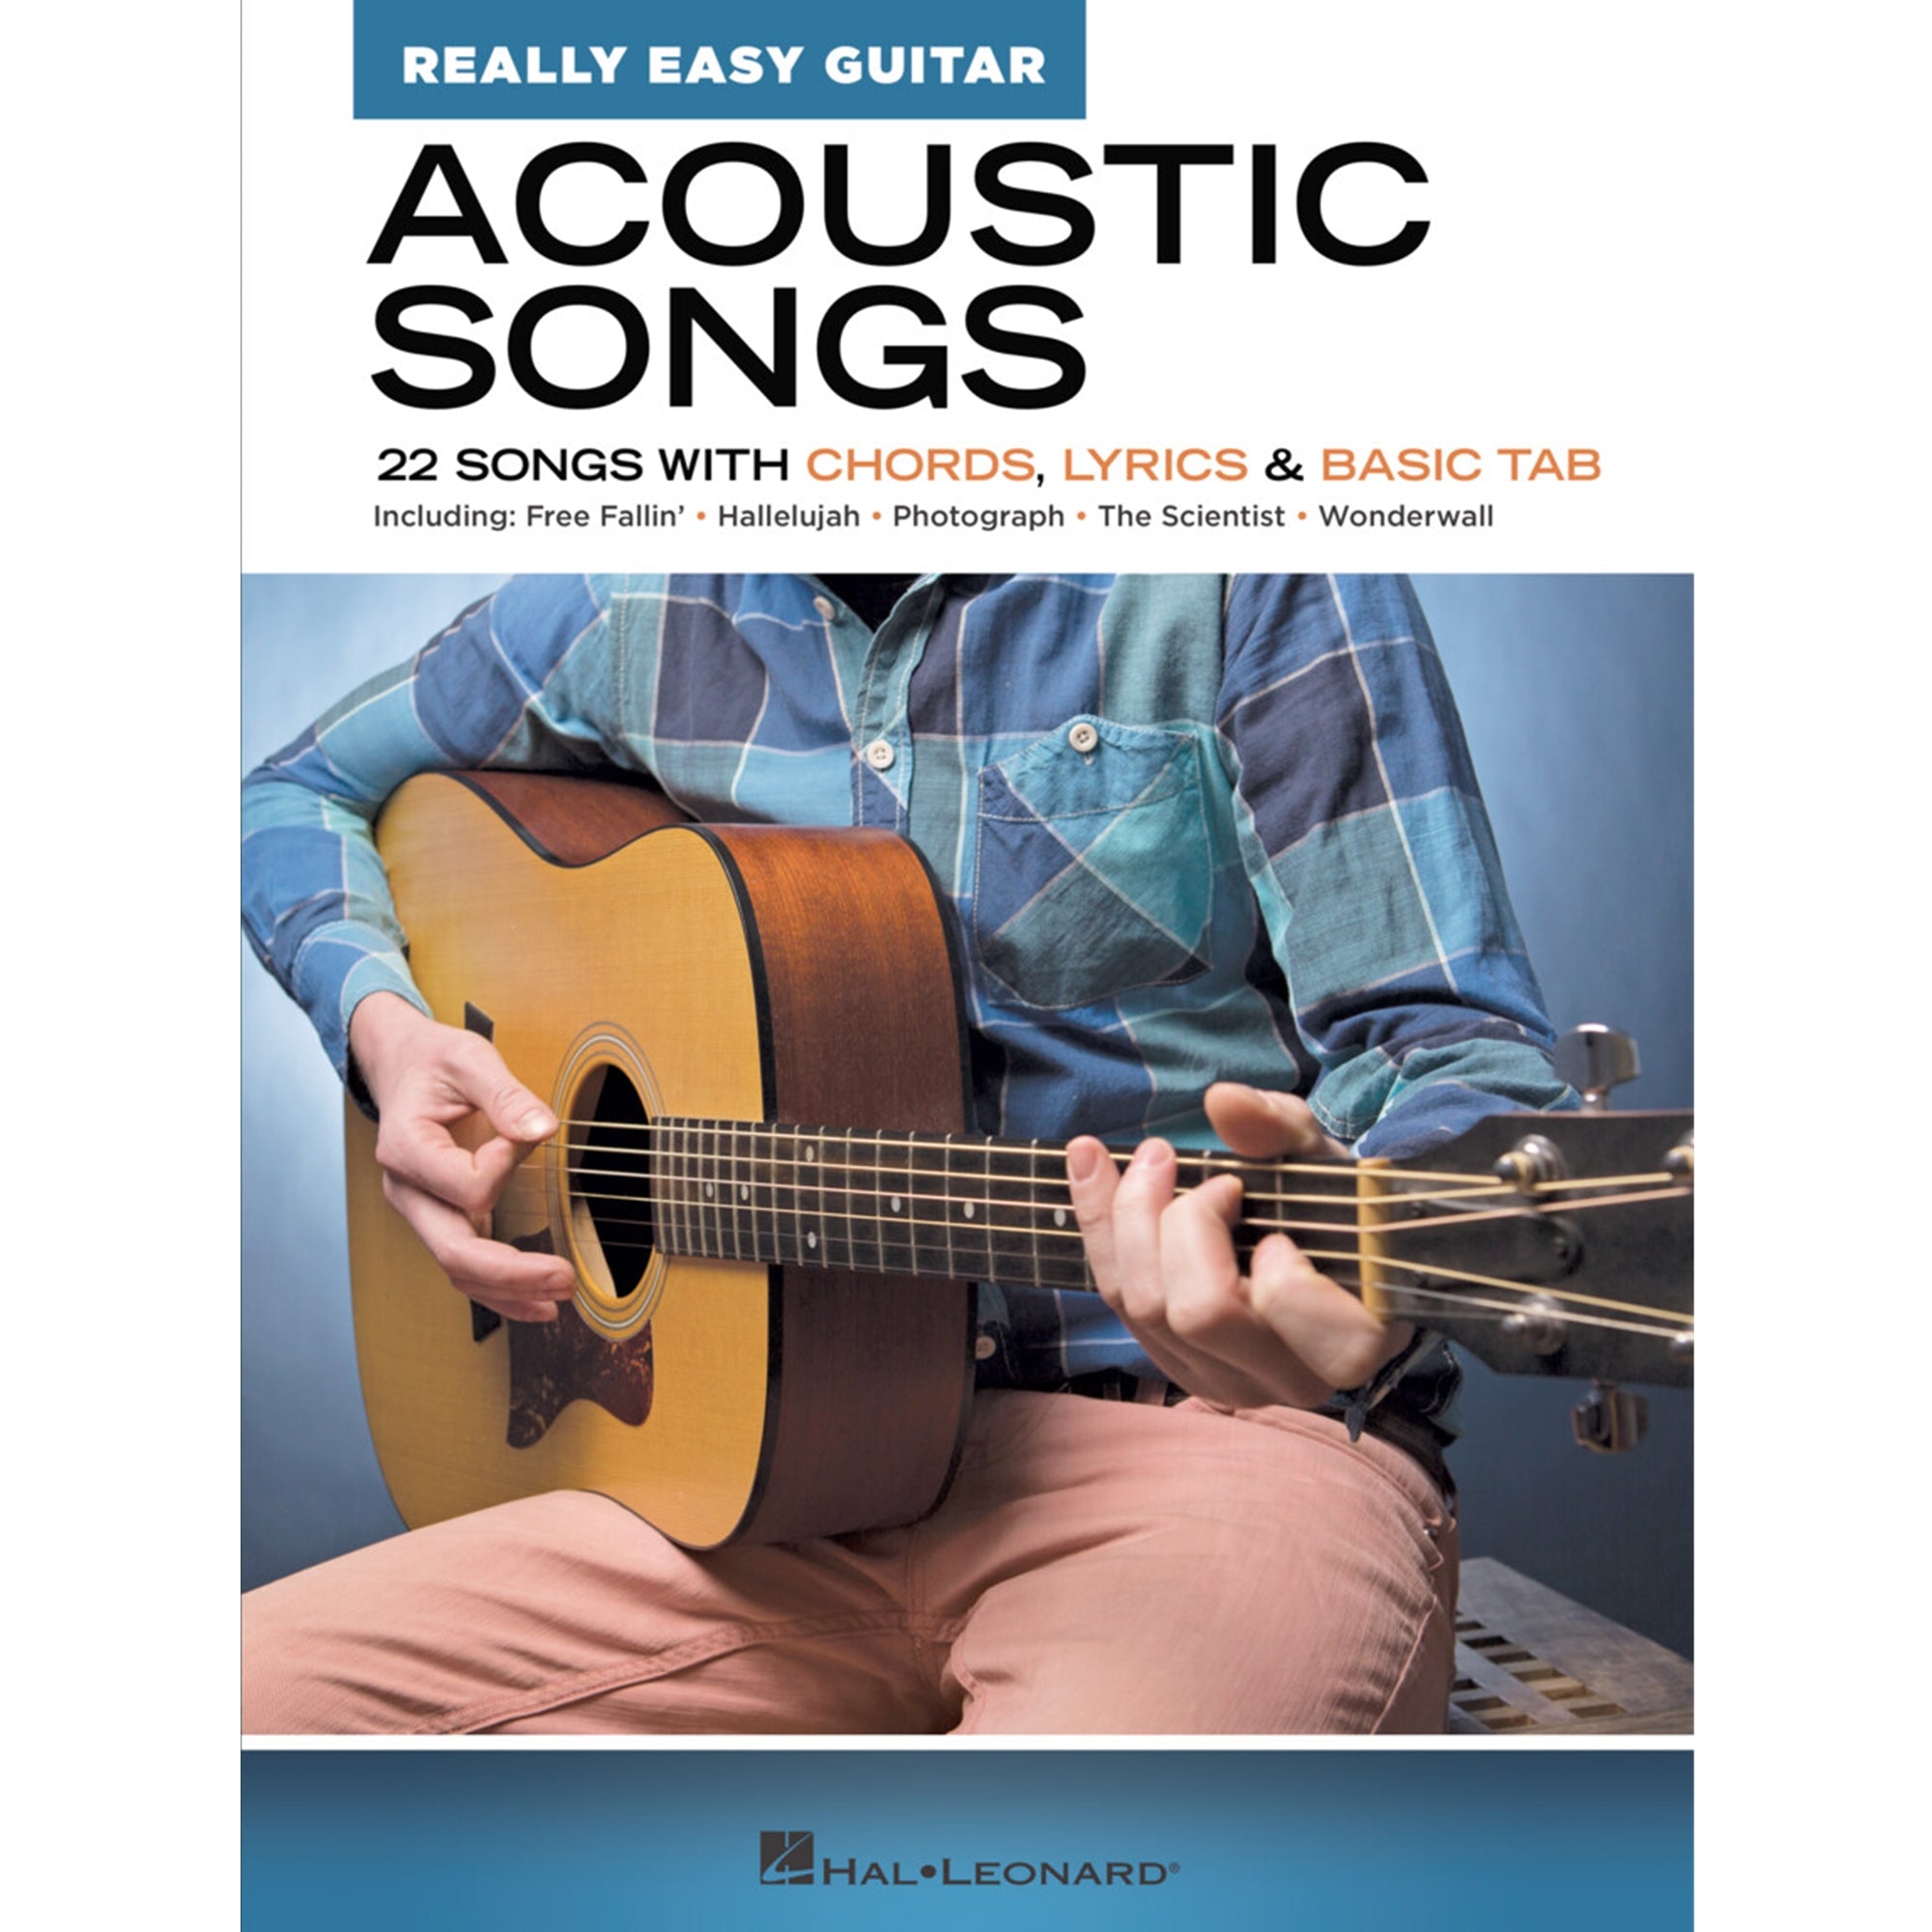 HAL LEONARD 286663 Acoustic Songs – Really Easy Guitar Series